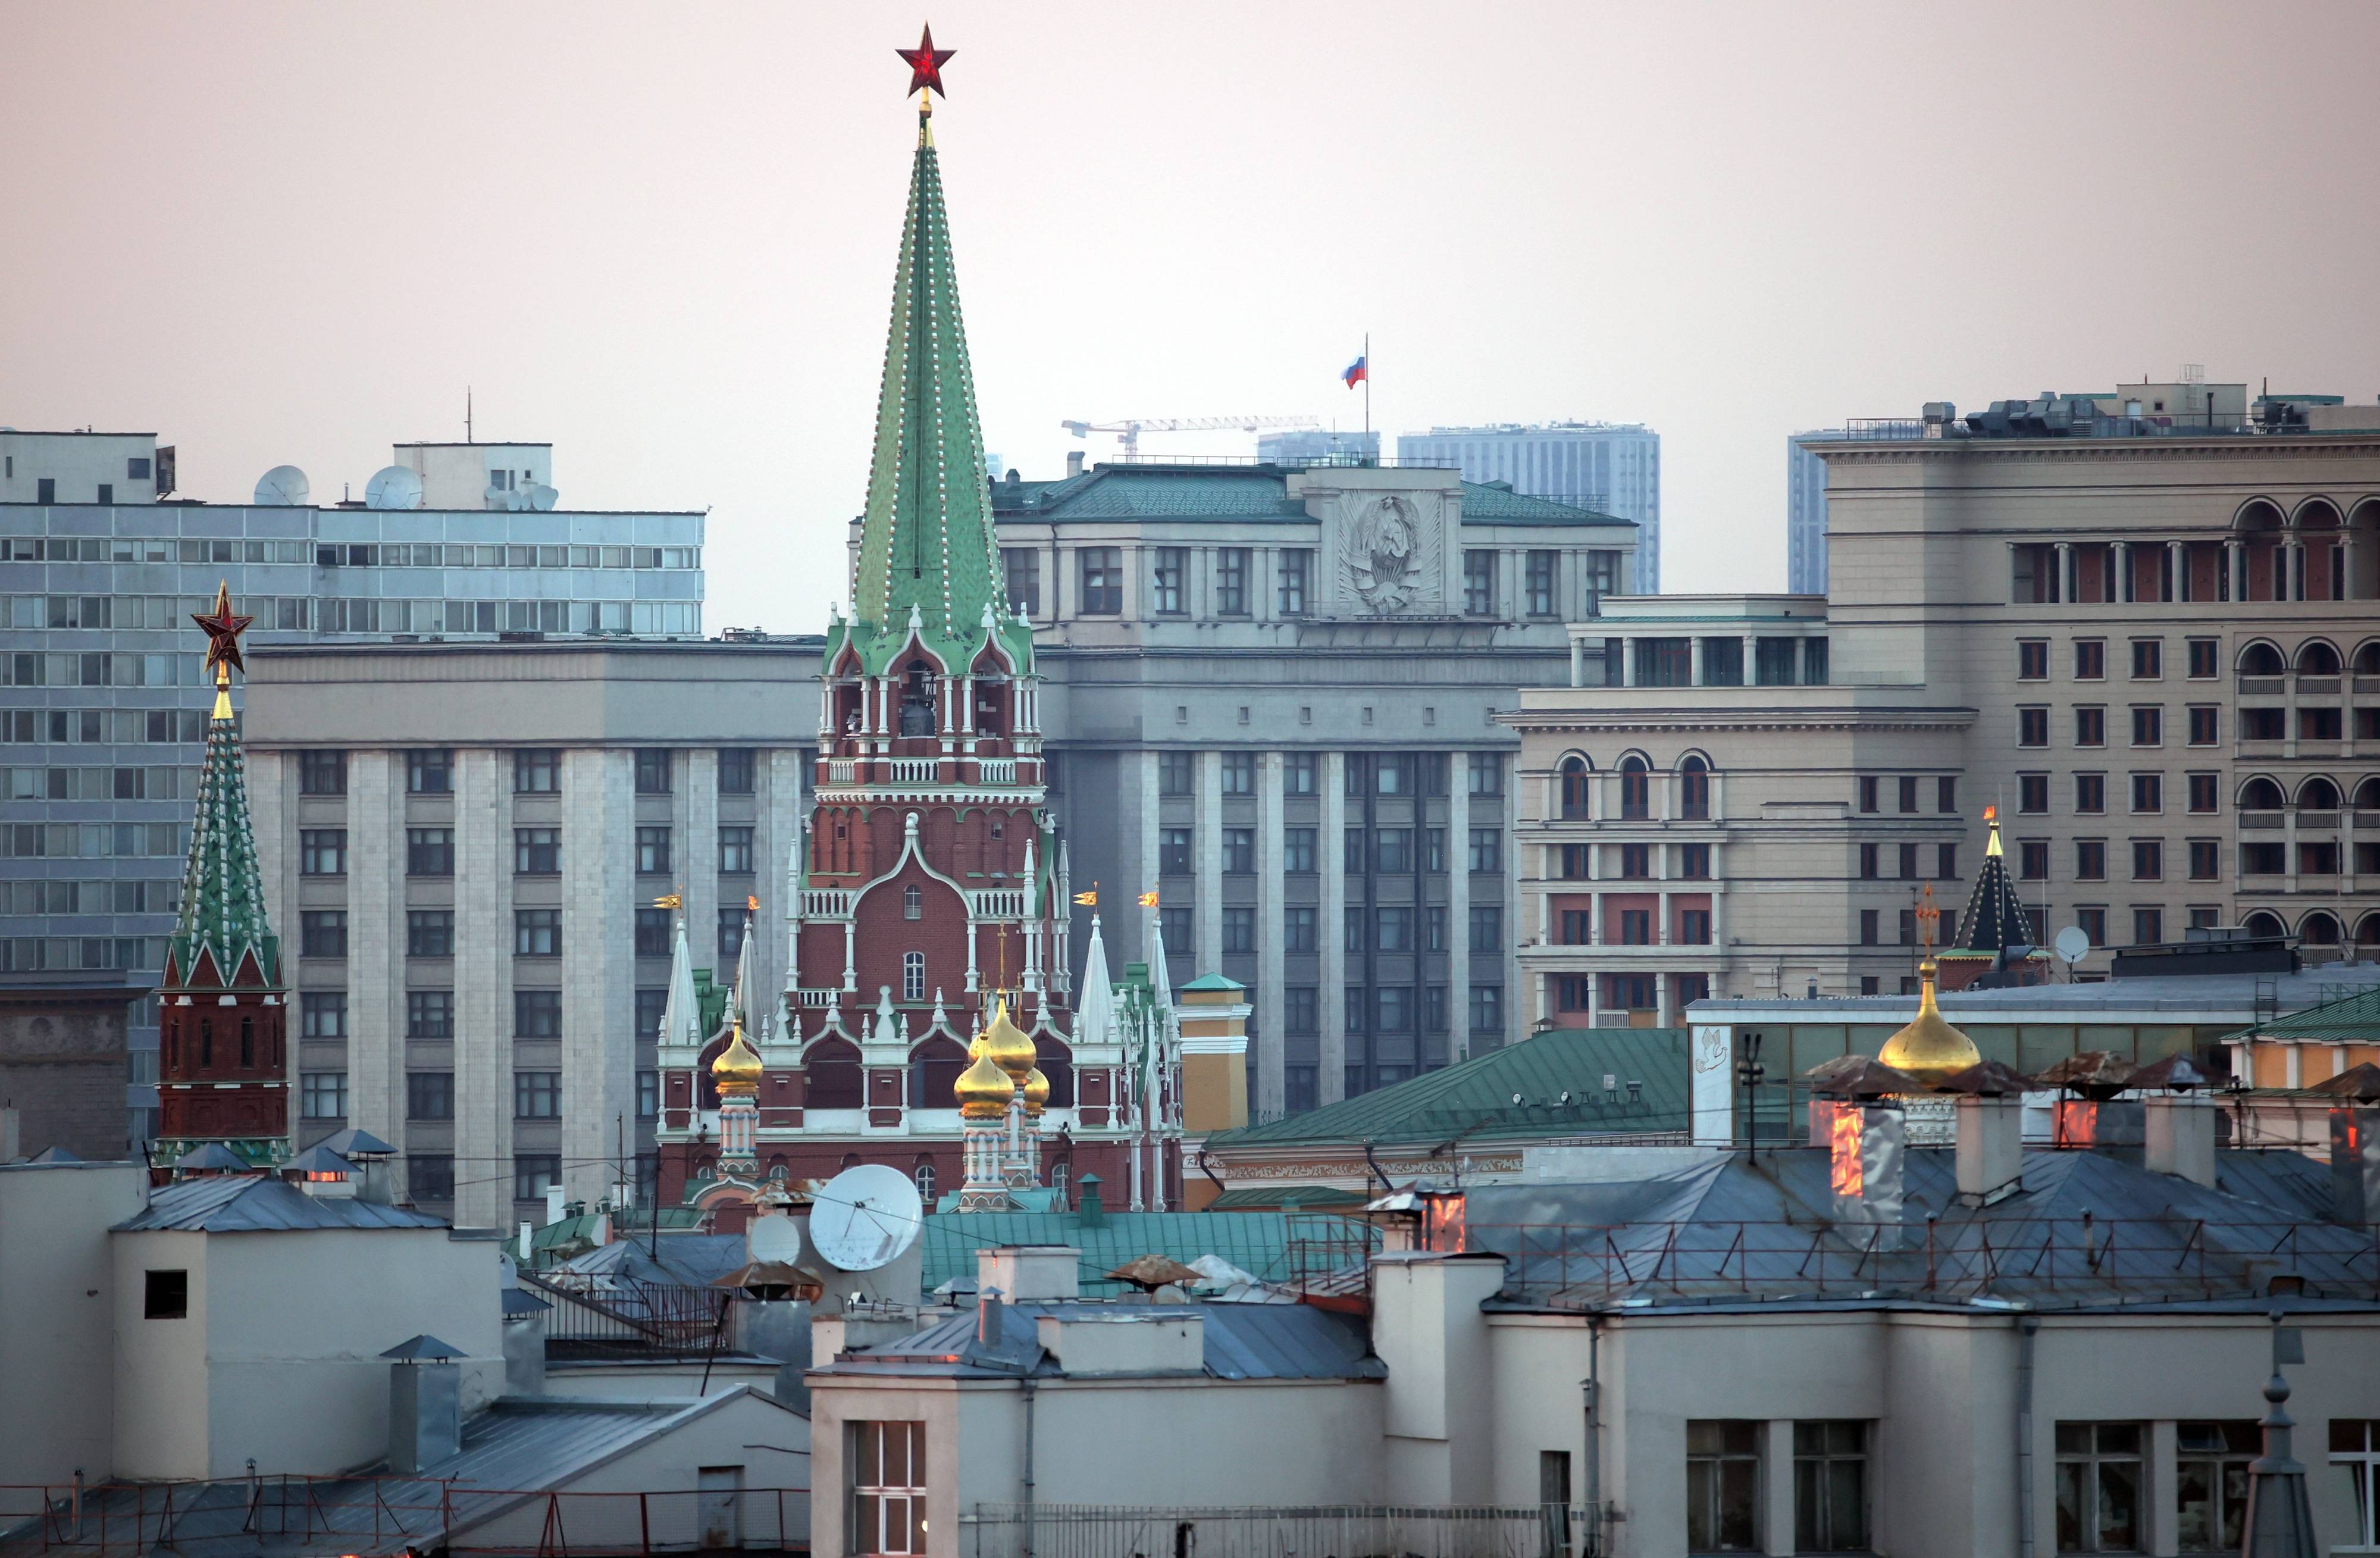 这是8月5日在俄罗斯莫斯科拍摄的克里姆林宫塔楼和国家杜马大楼